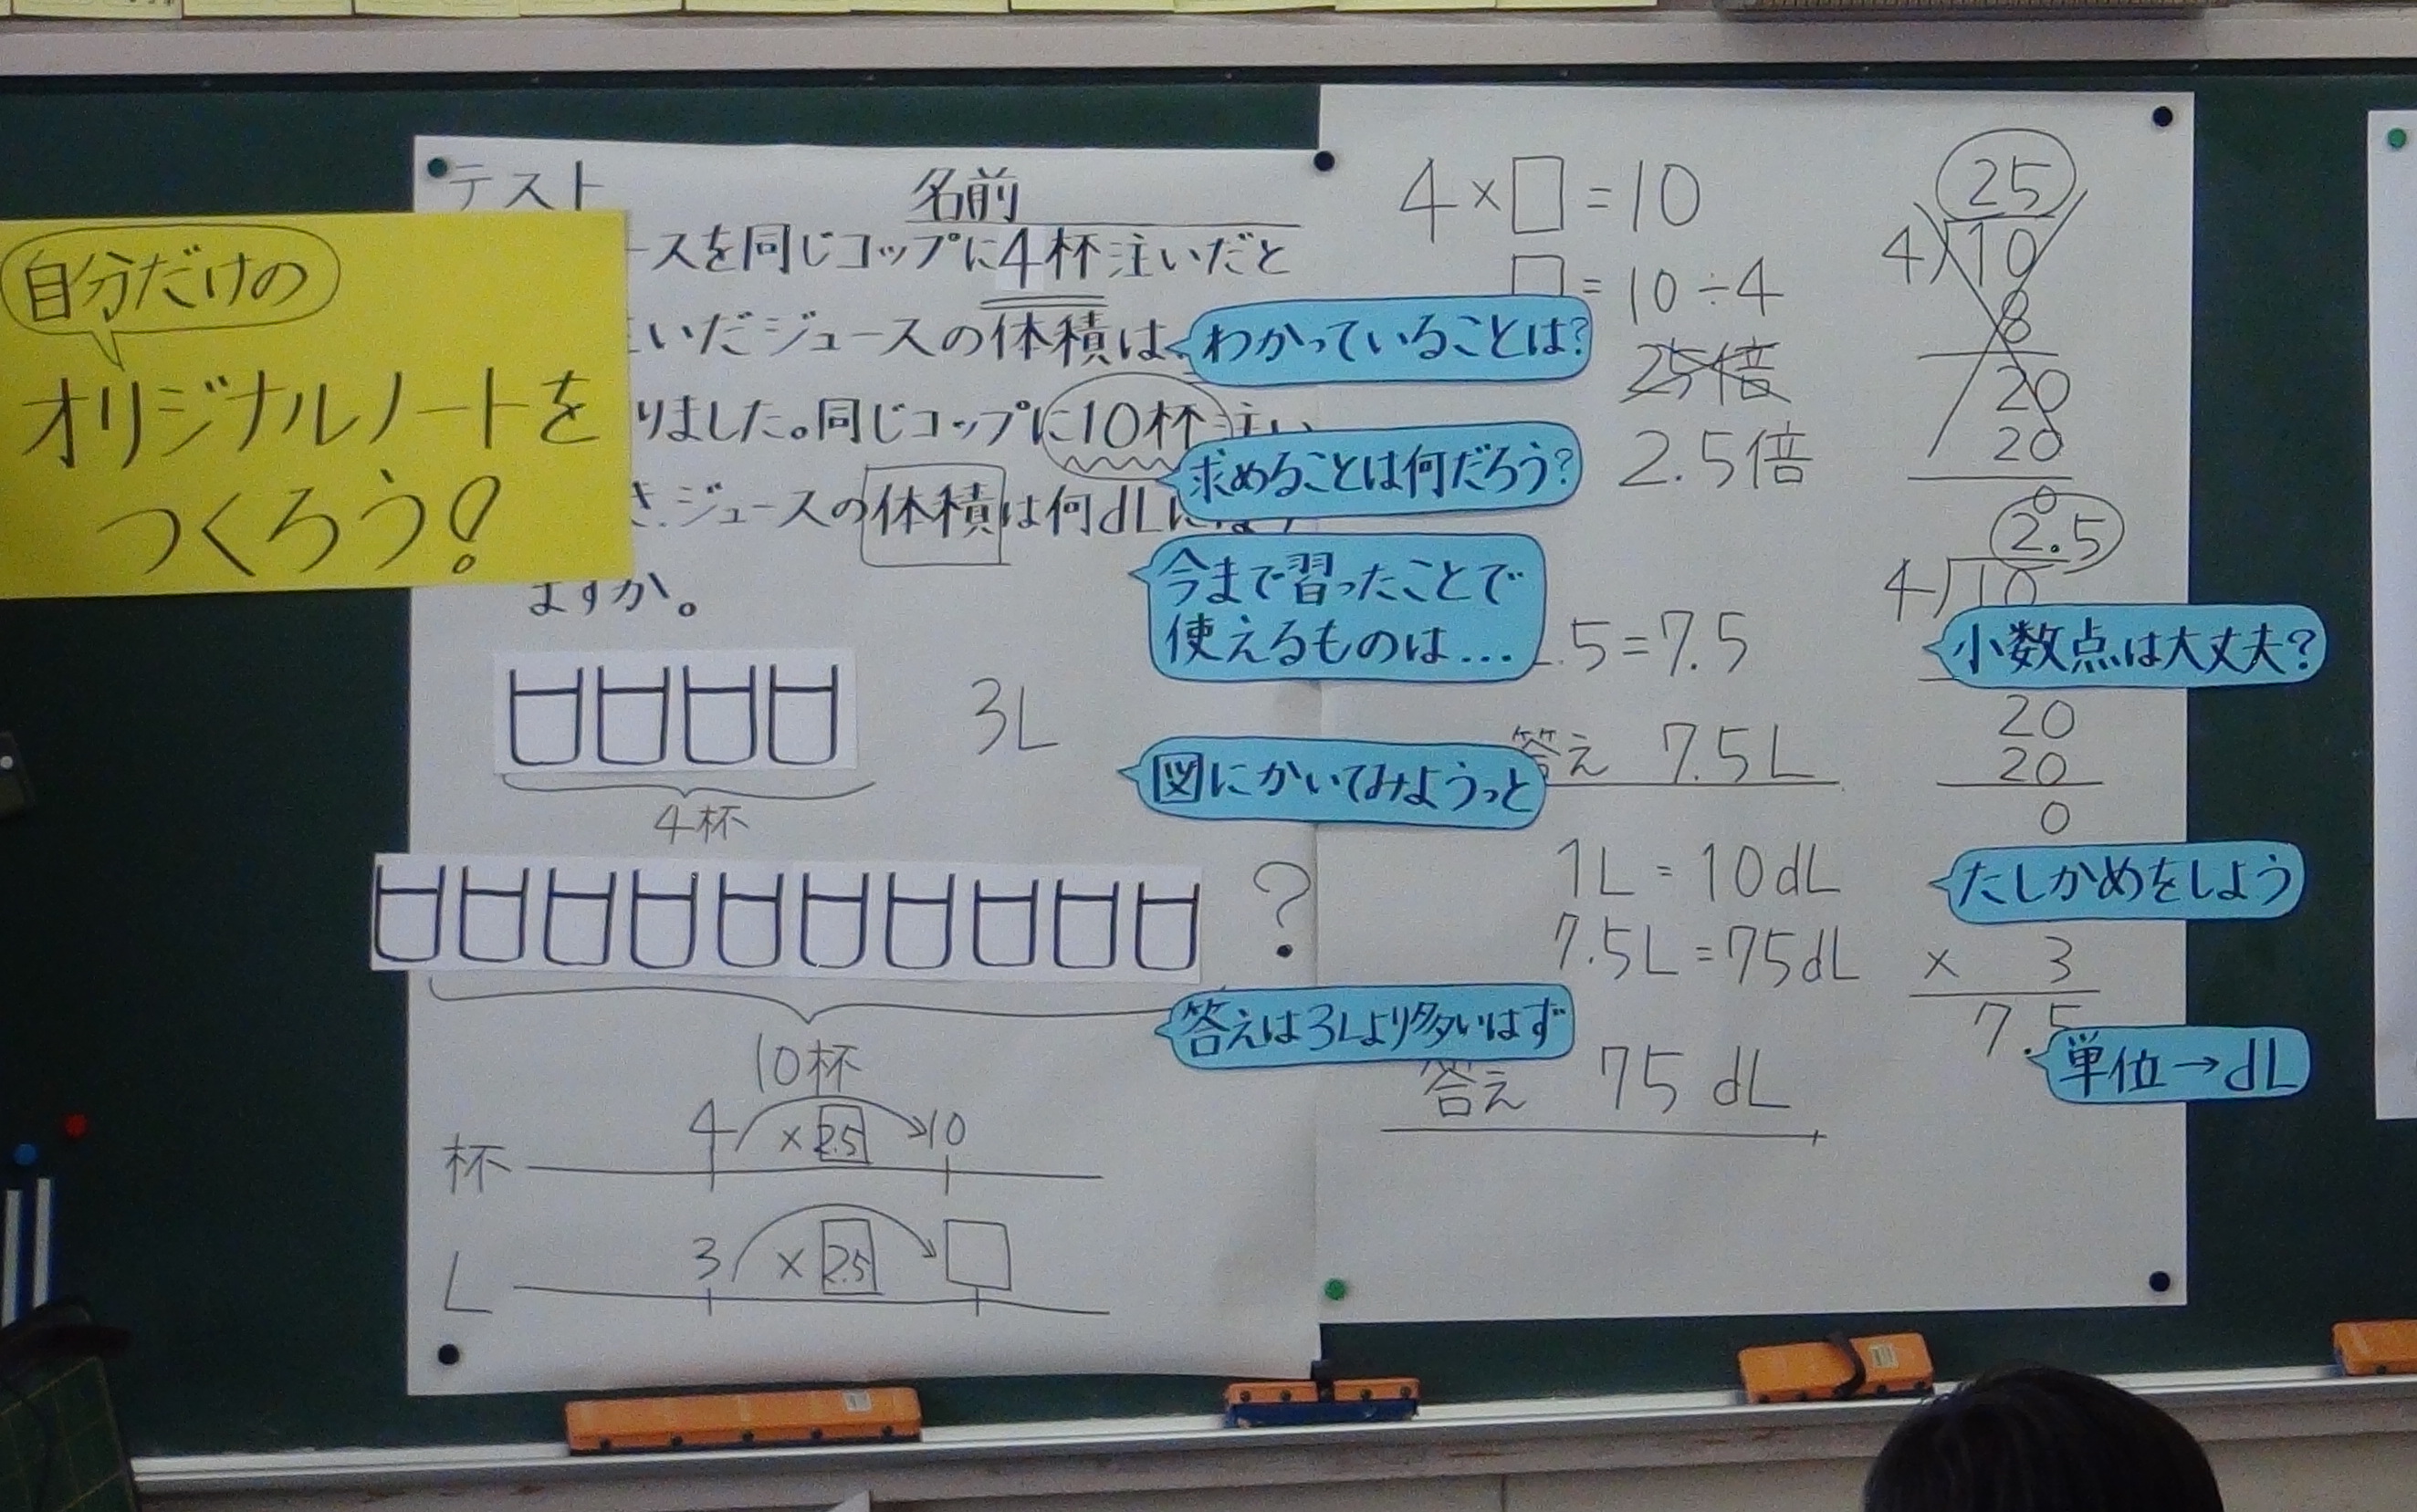 小学校5年生の算数授業で、メタ認知を「頭の中の先生」として教え、「頭の中の先生」の言葉をどのように使ったら良いかノート指導をした時の黒板掲示物です。